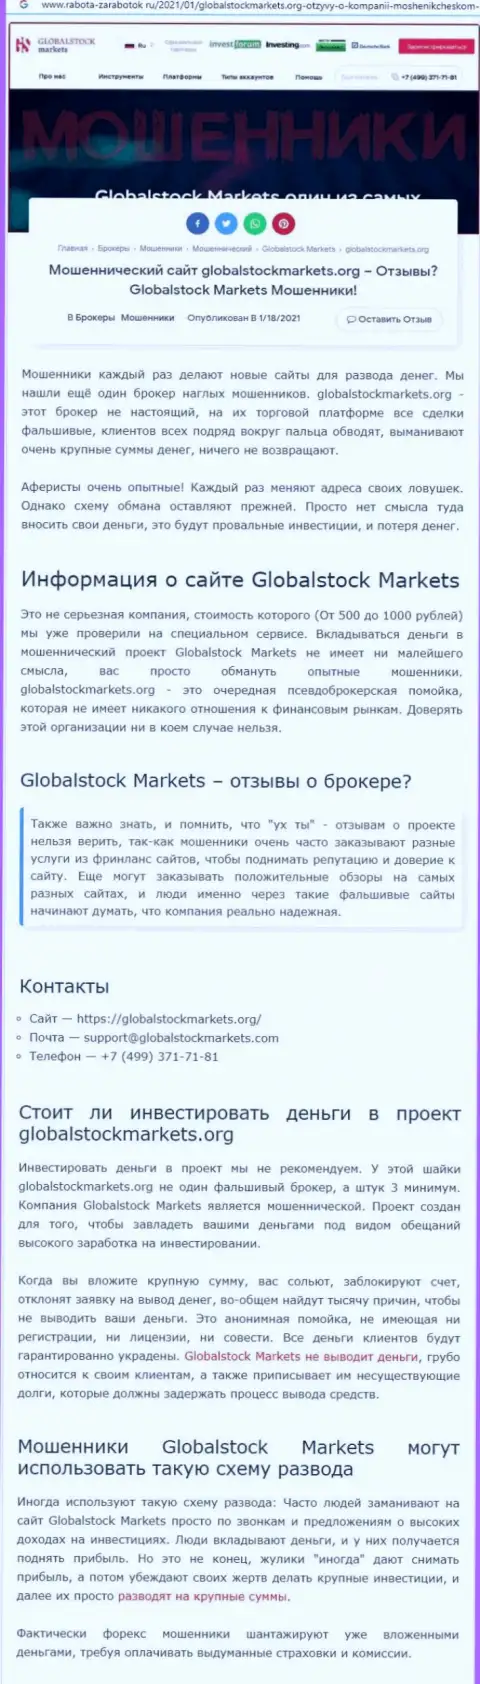 Global Stock Markets - это ОБМАН НА ДЕНЬГИ !!! БУДЬТЕ ОЧЕНЬ ВНИМАТЕЛЬНЫ (обзорная статья)